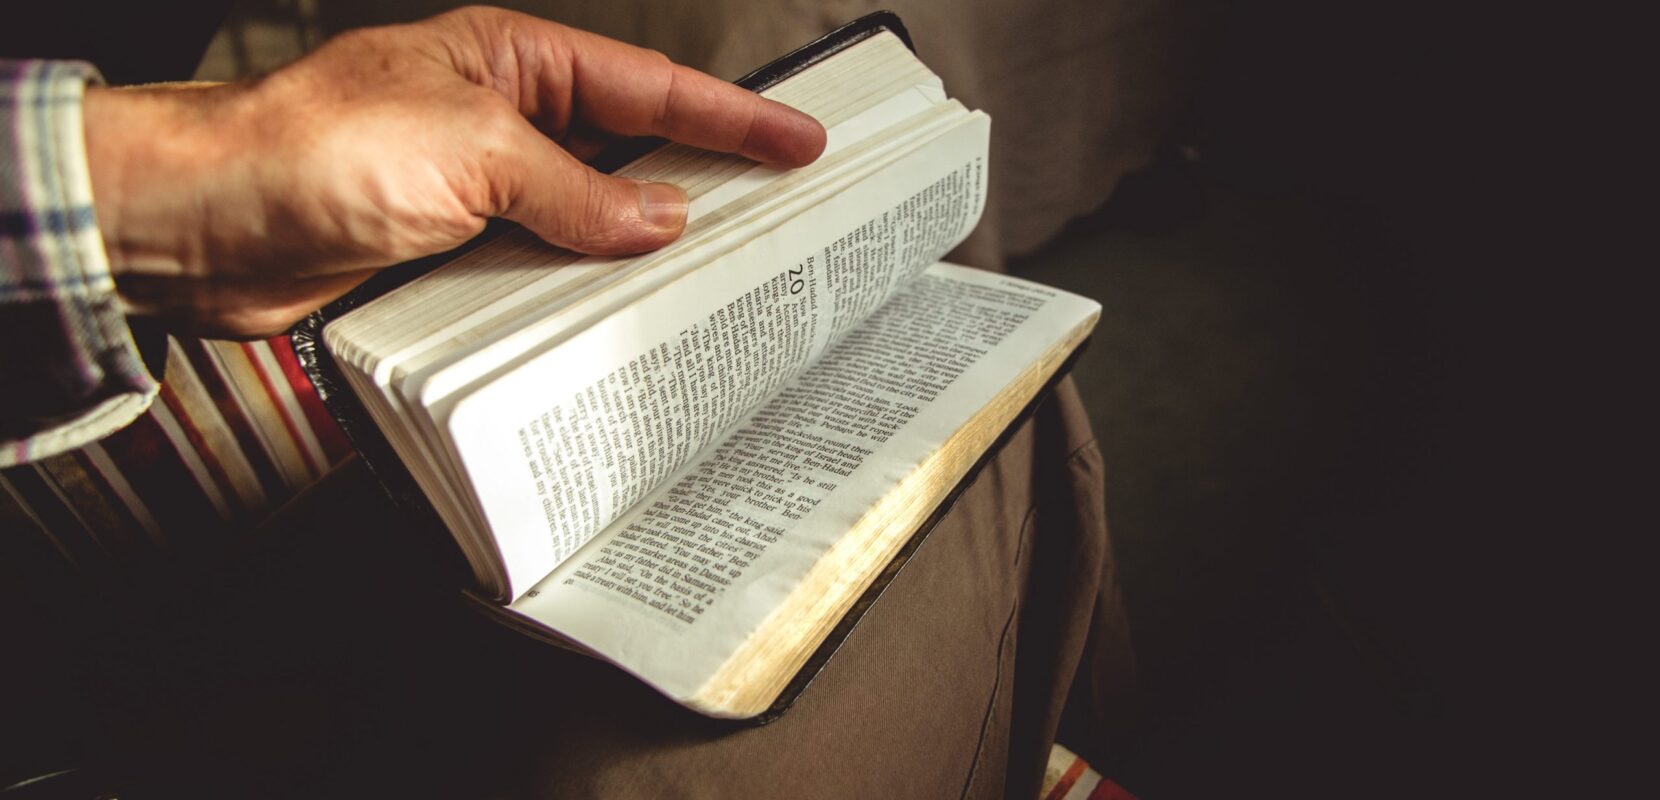 a man flips through his bible